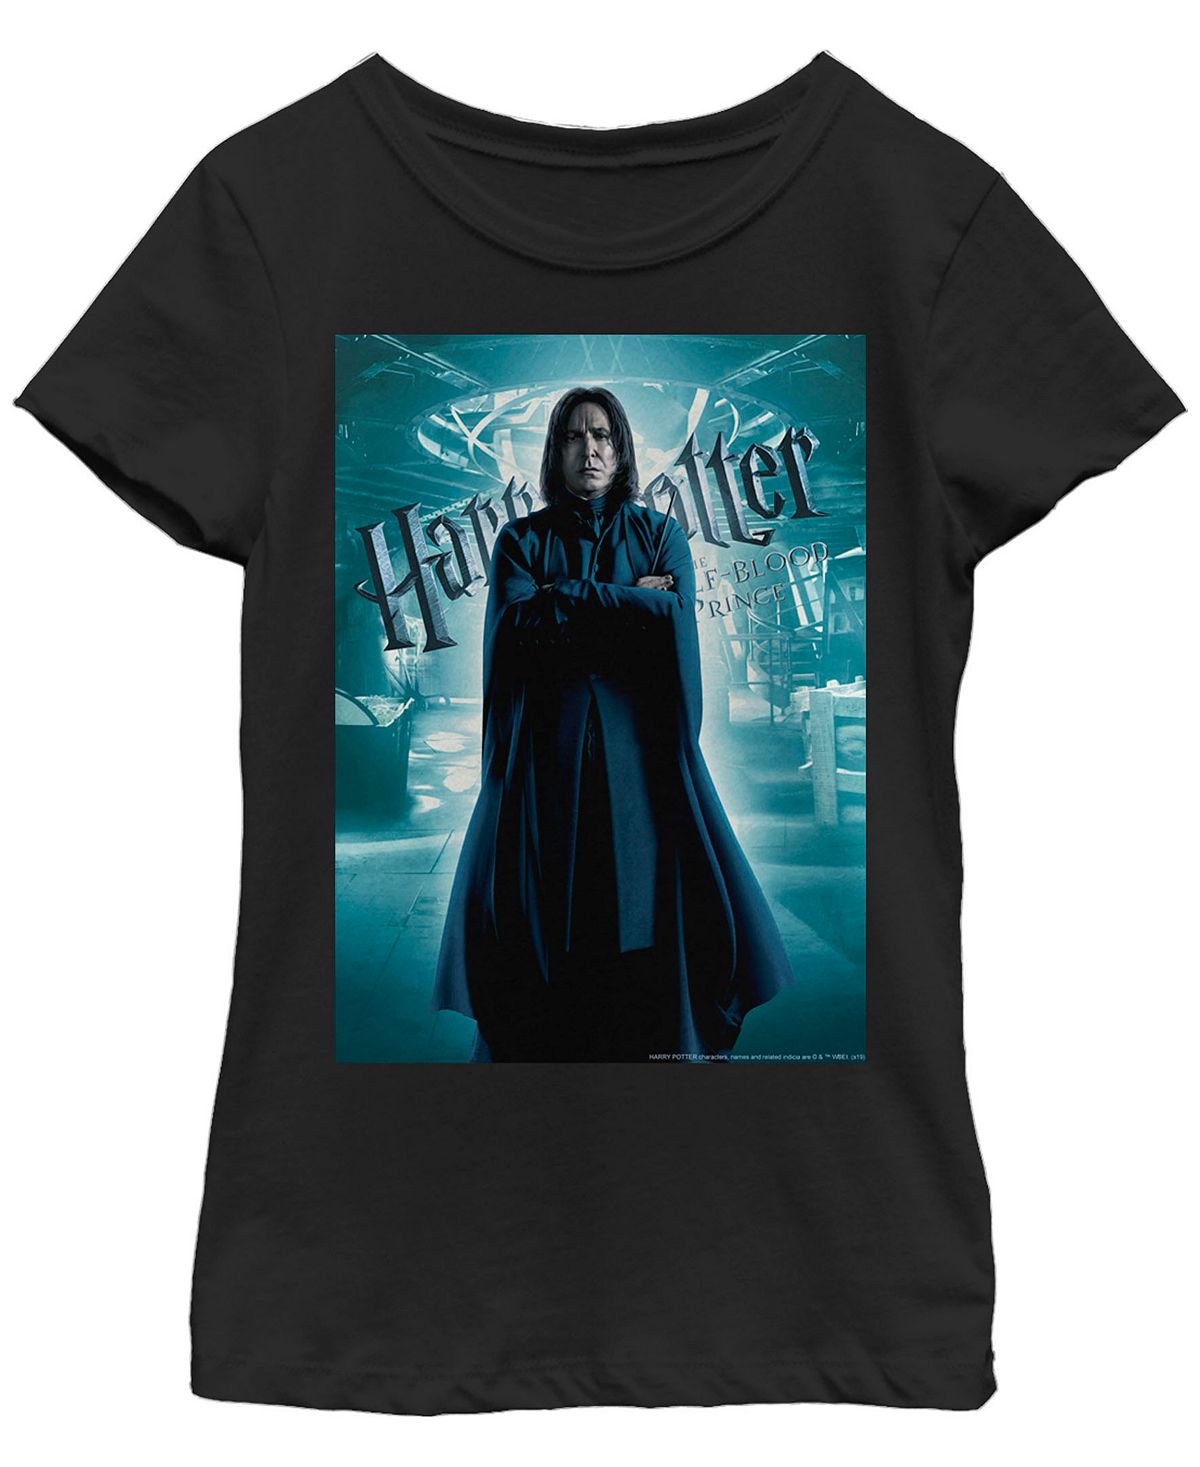 

Детская футболка с плакатом «Гарри Поттер-Принц-полукровка Снейп» для девочек Fifth Sun